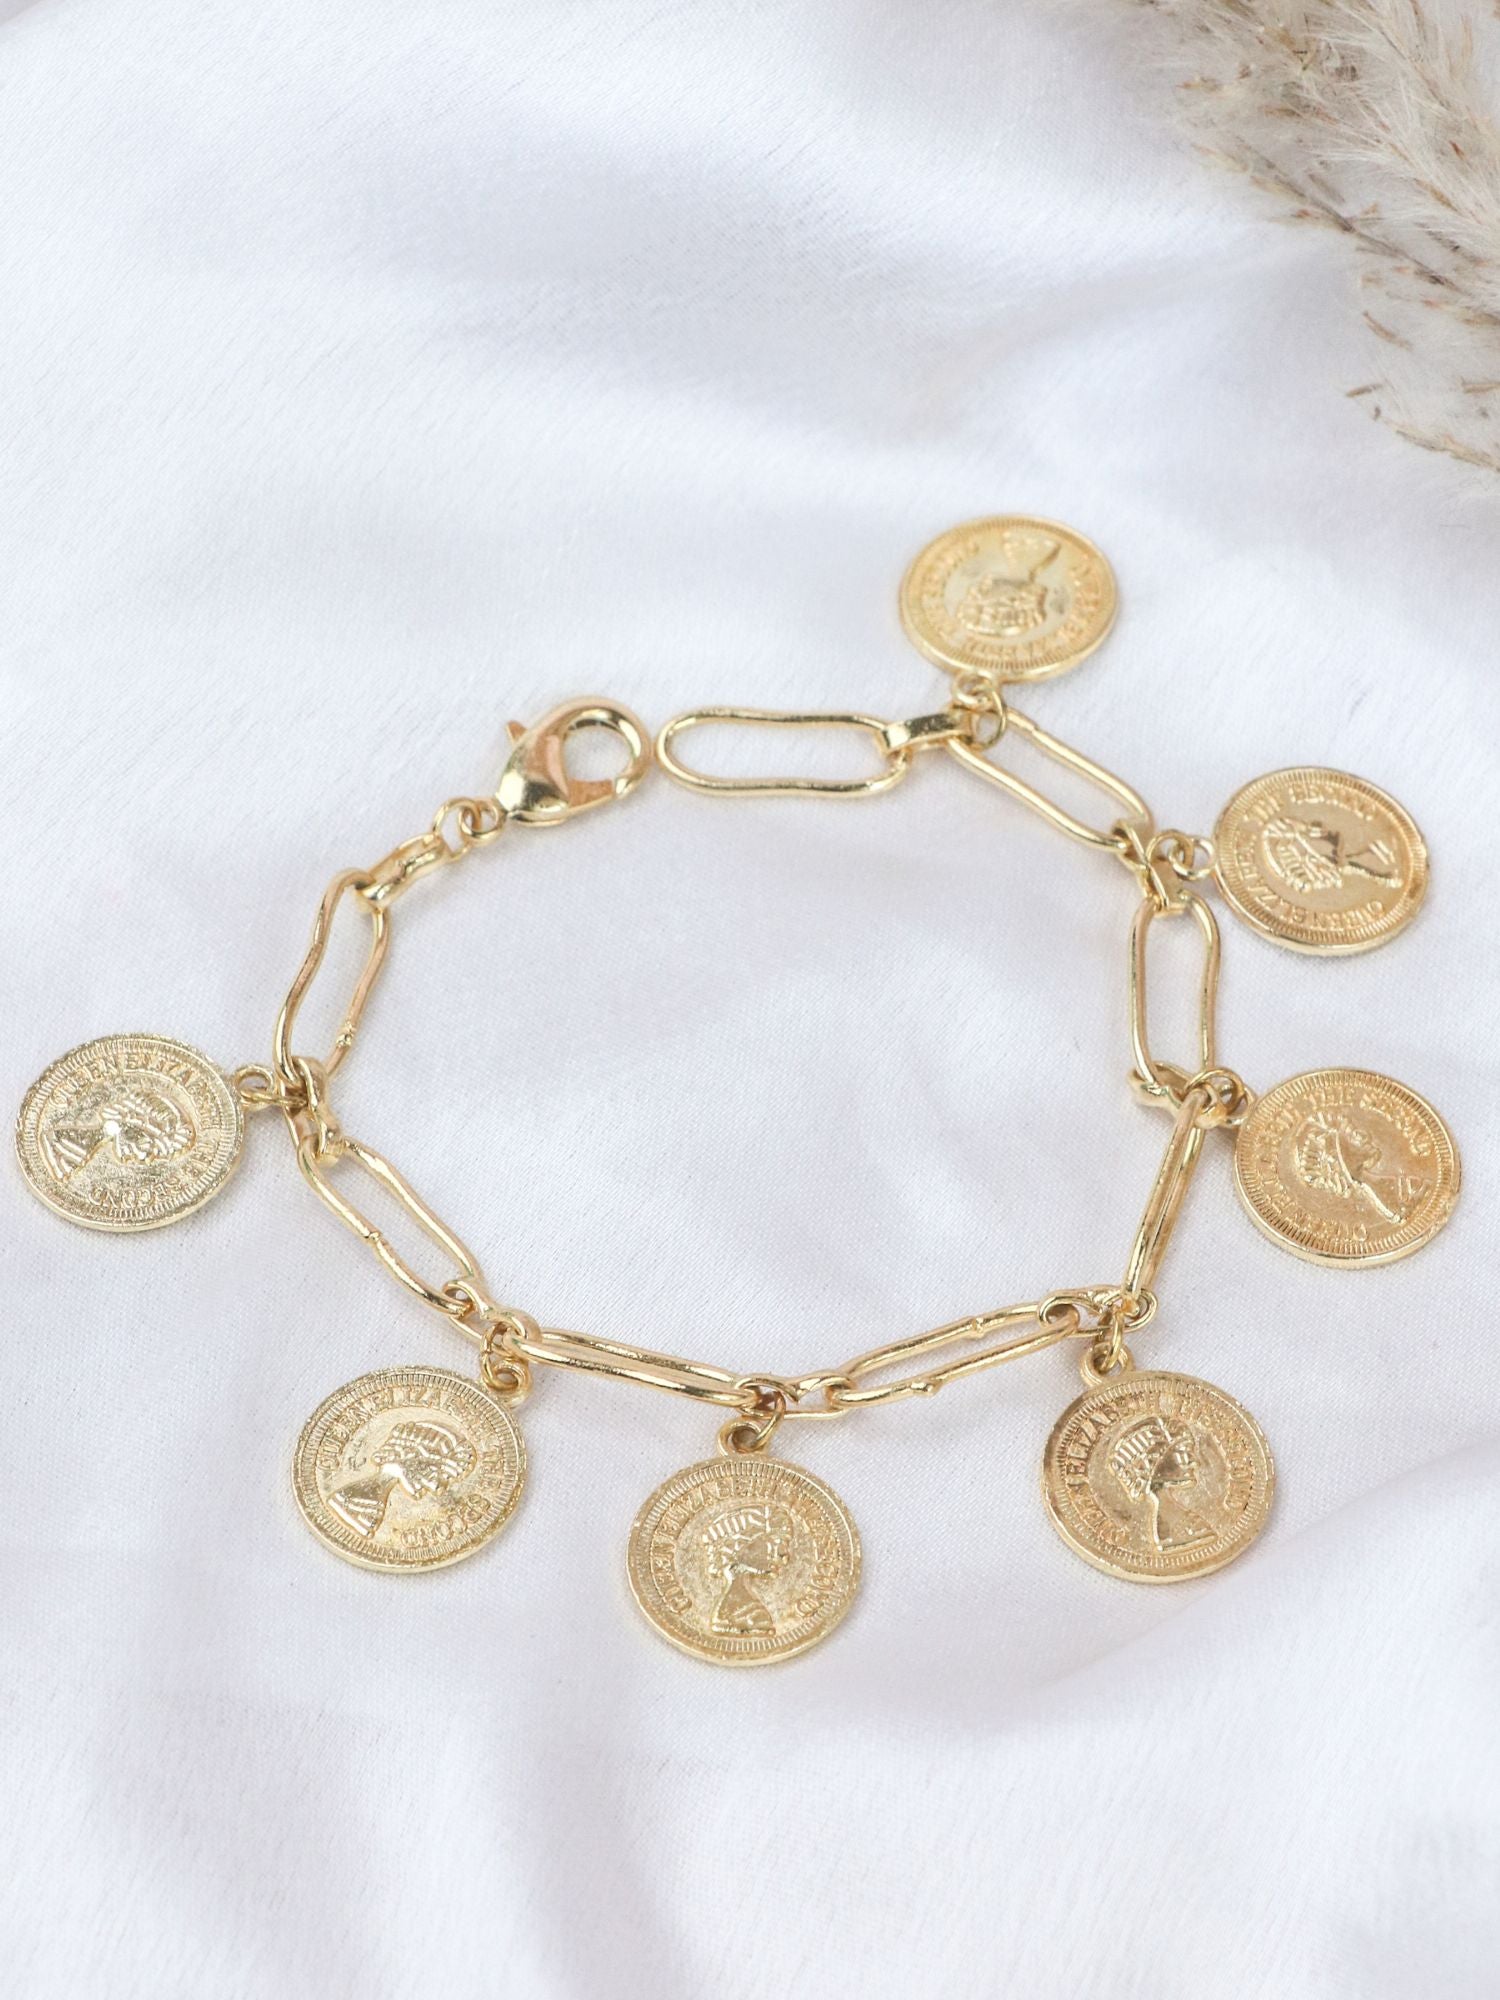 Hzmer Jewelry goldplated Charm Bracelet  Farfetch